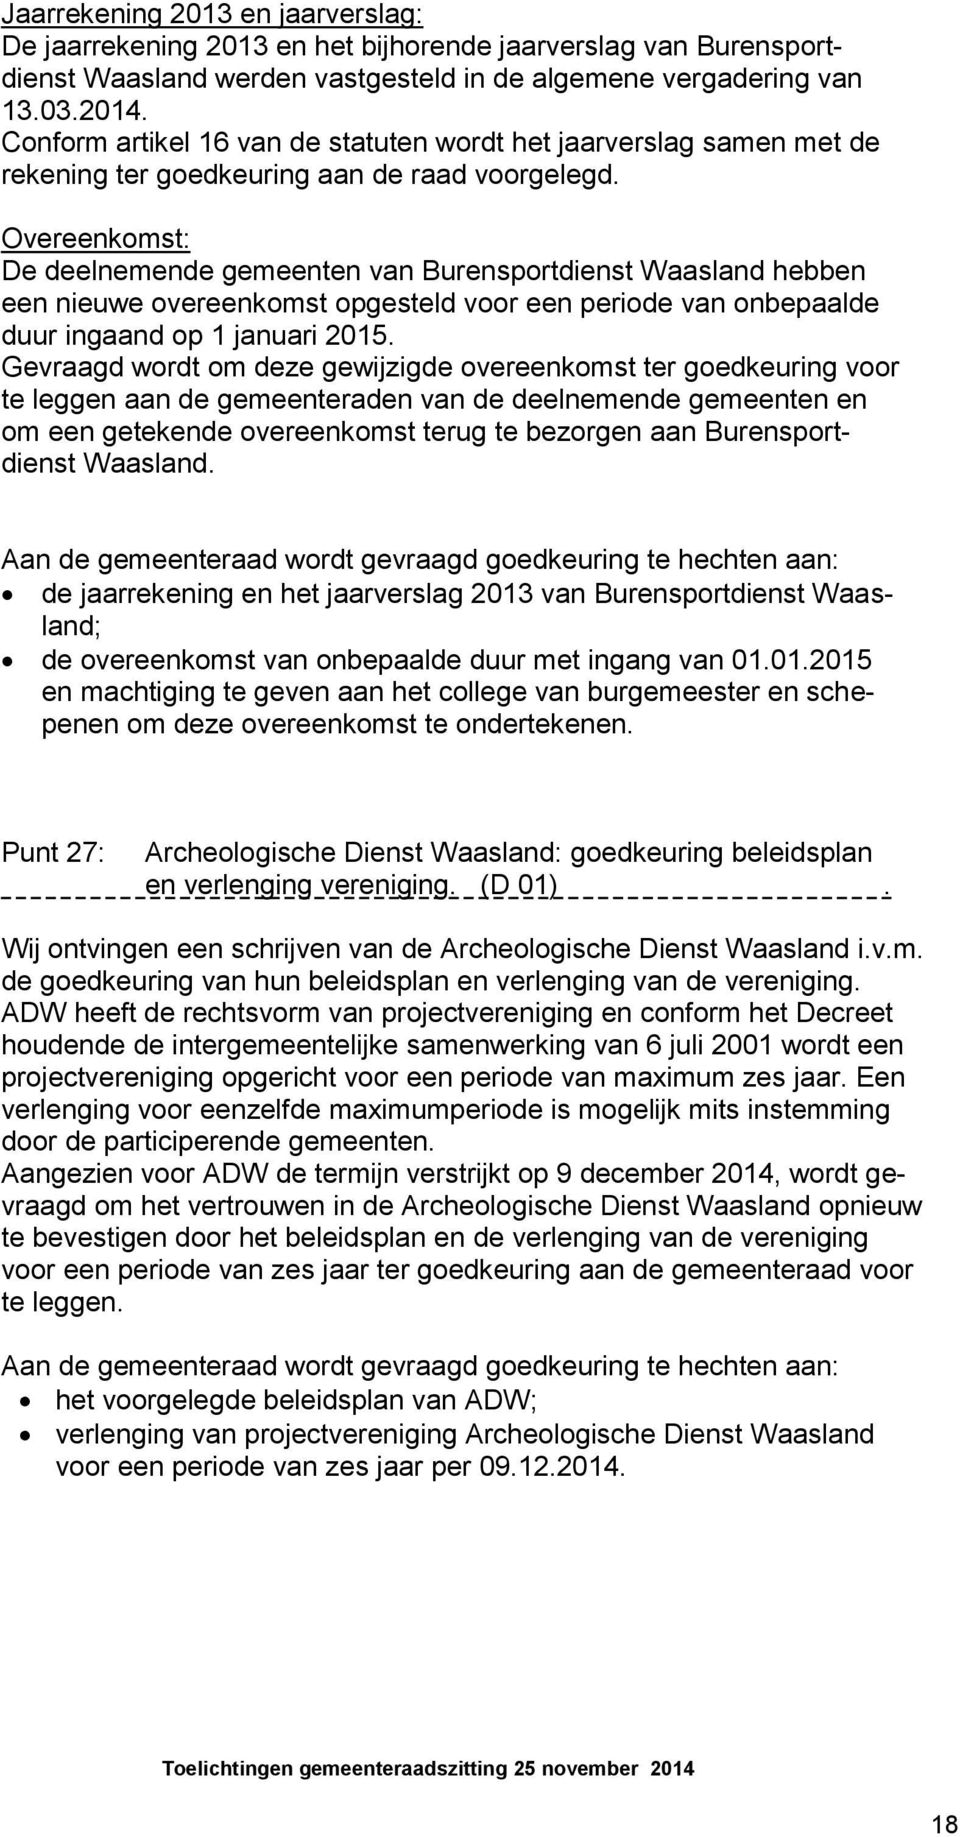 Overeenkomst: De deelnemende gemeenten van Burensportdienst Waasland hebben een nieuwe overeenkomst opgesteld voor een periode van onbepaalde duur ingaand op 1 januari 2015.